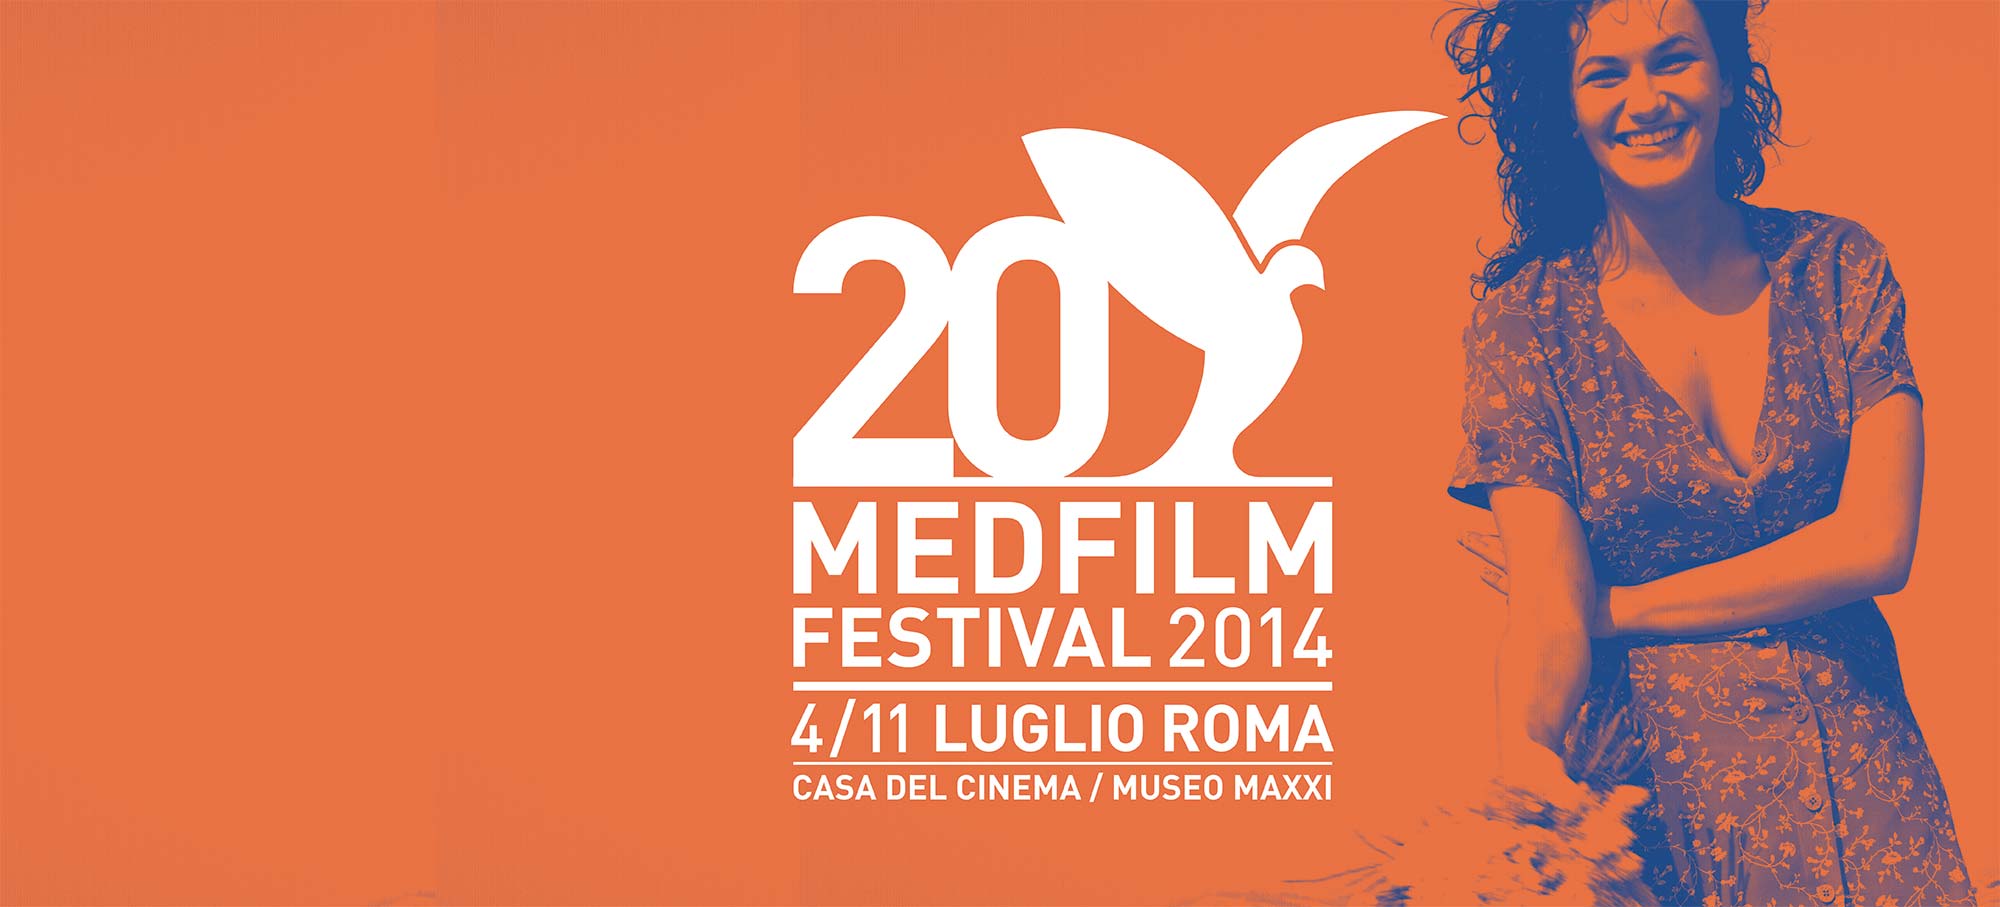 Il Med Film Festival 2014: un ventennale con i fiocchi.